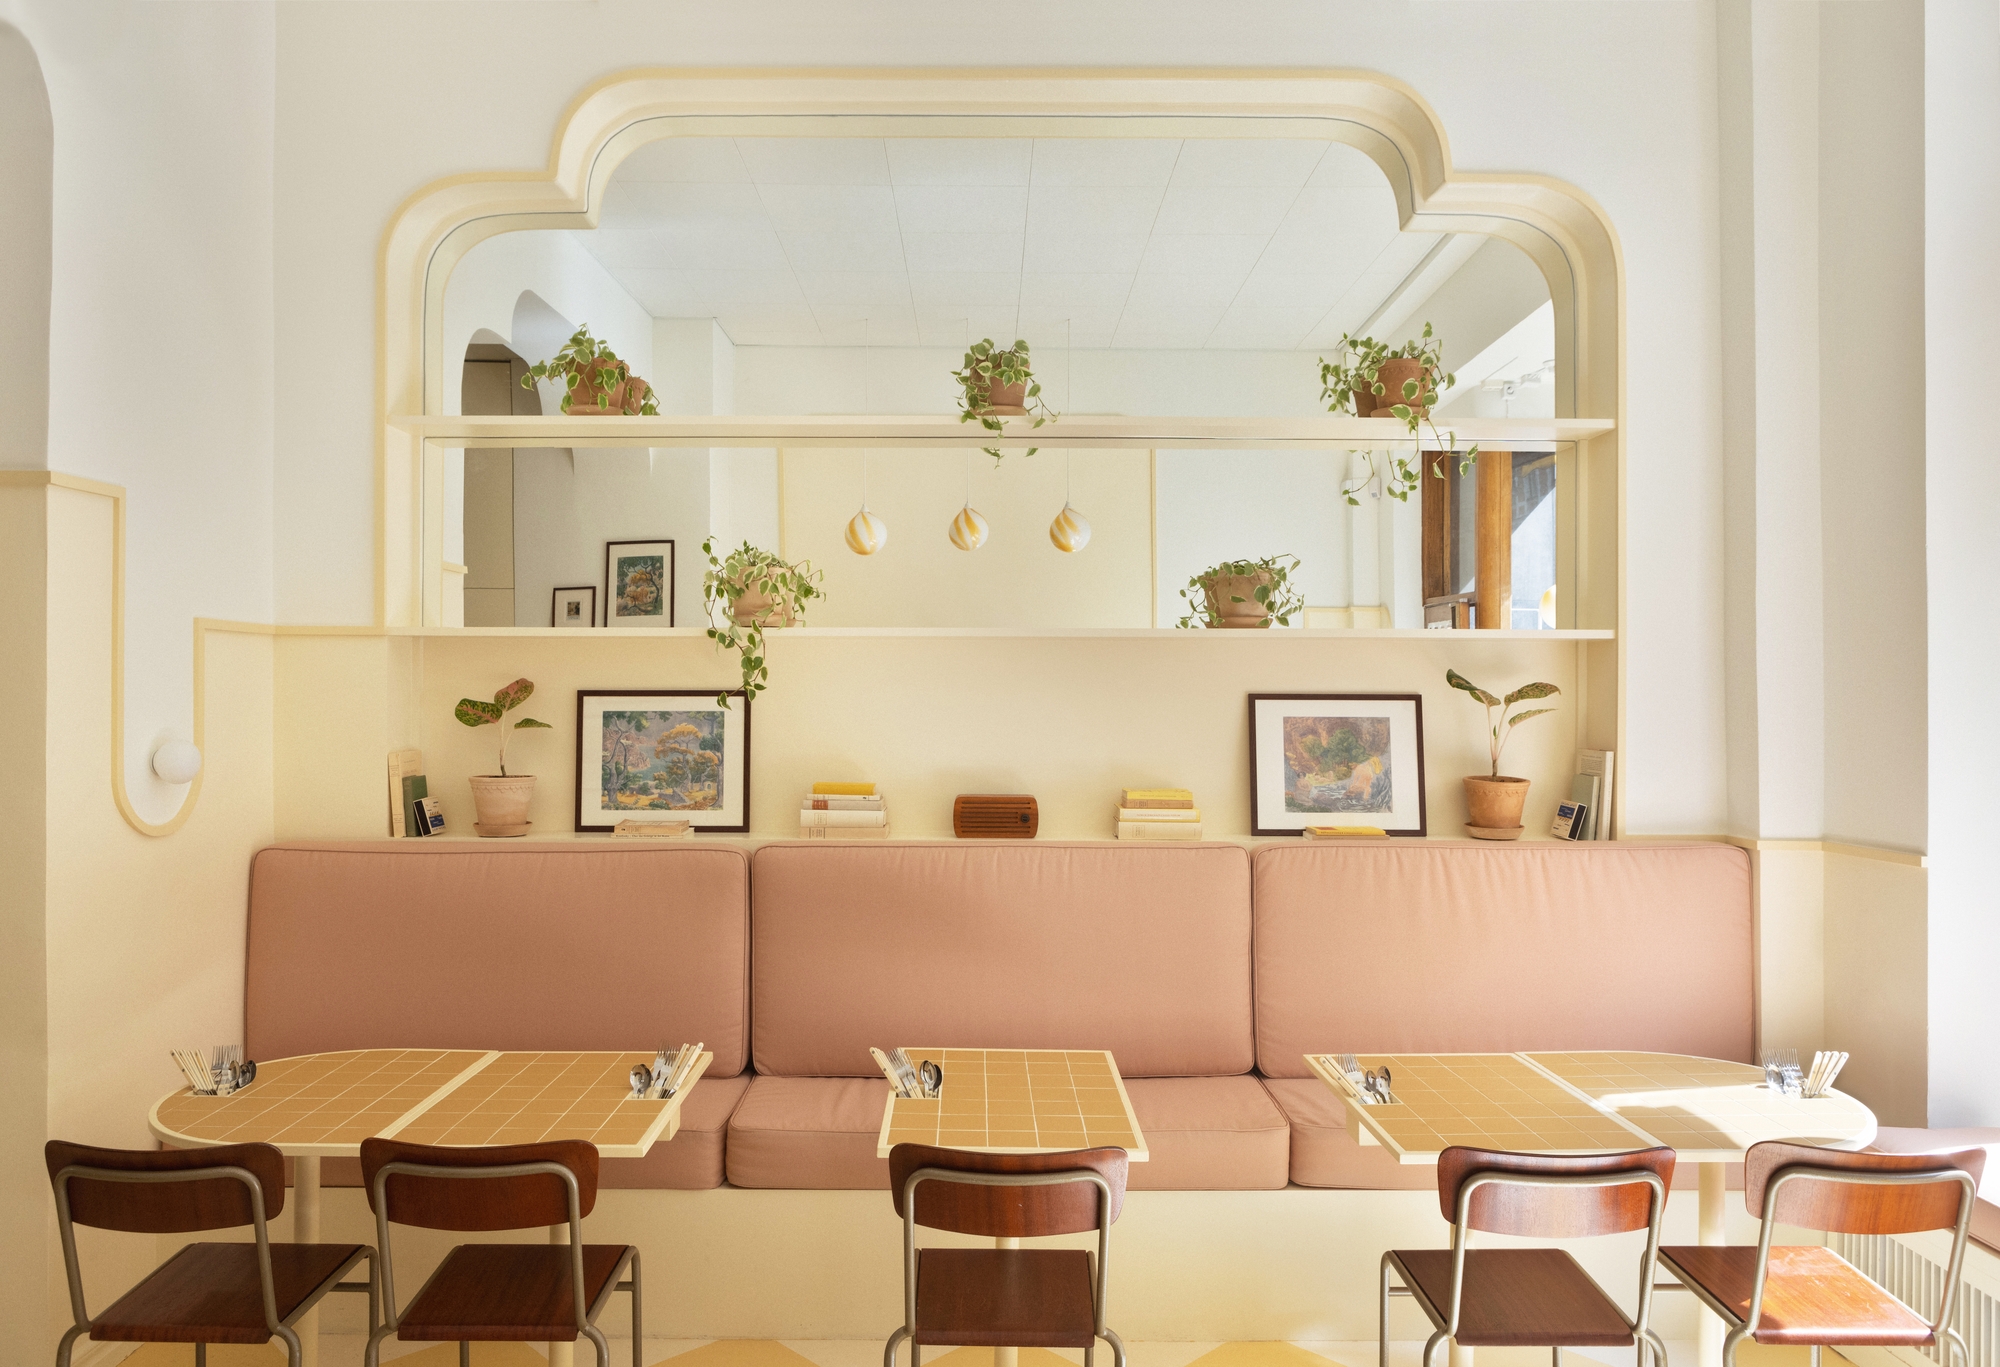 图片[4]|Banacado咖啡馆|ART-Arrakis | 建筑室内设计的创新与灵感